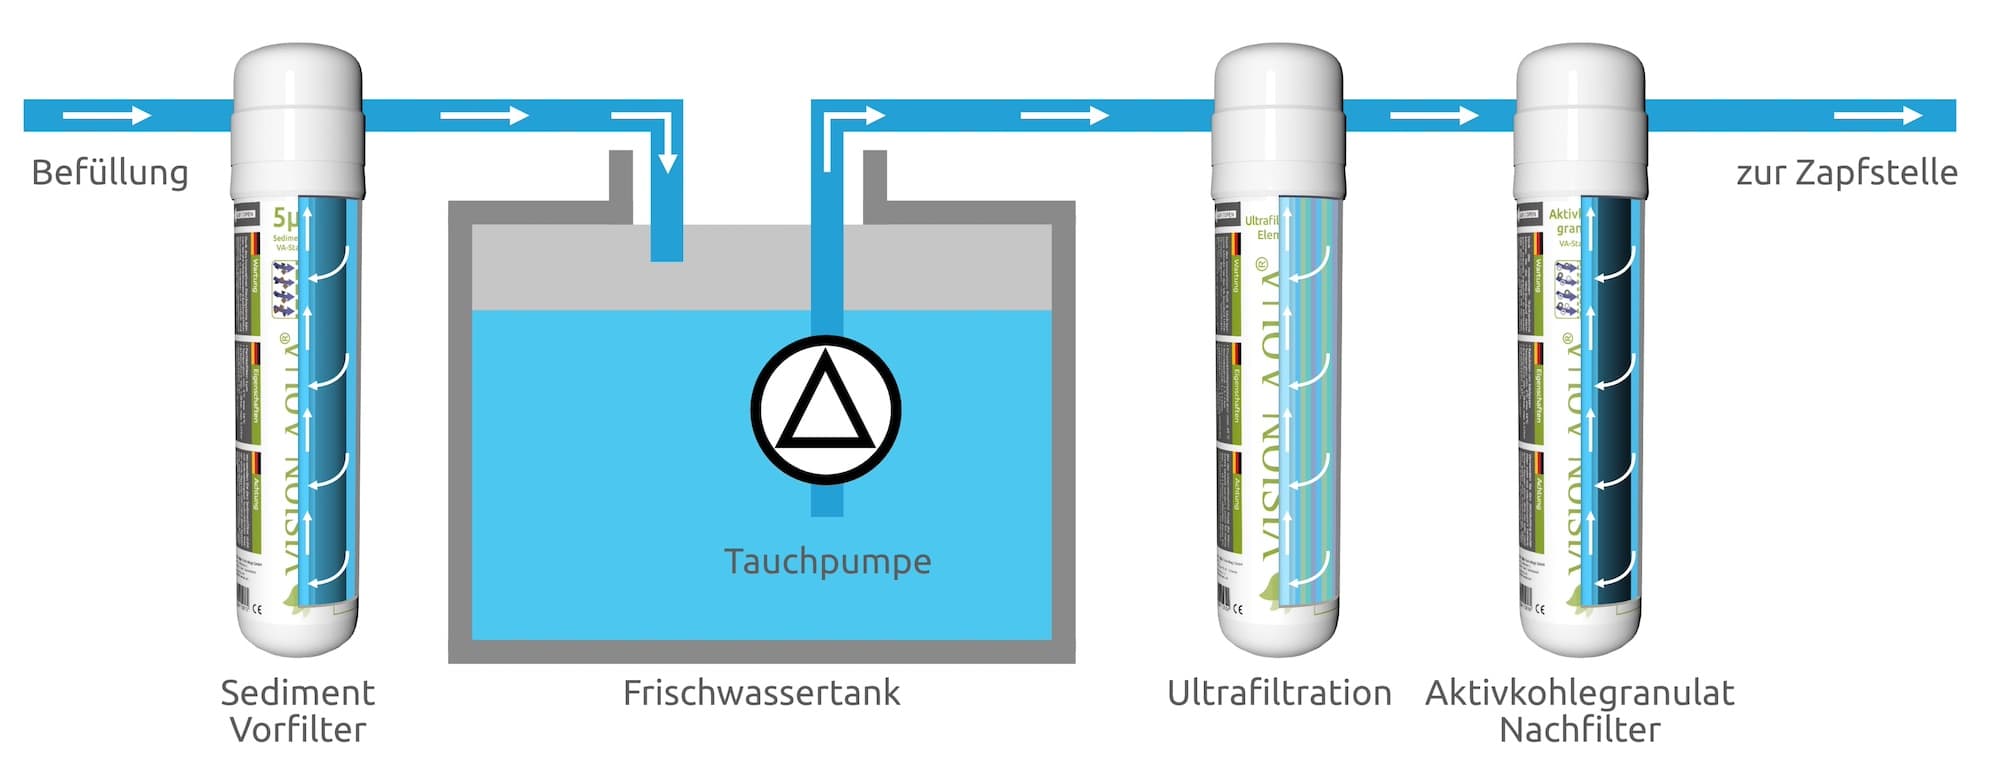 VISION AQUA Wasserfilter Wasseraufbereitung im Wohnmobil und Boot in Süedeuropa